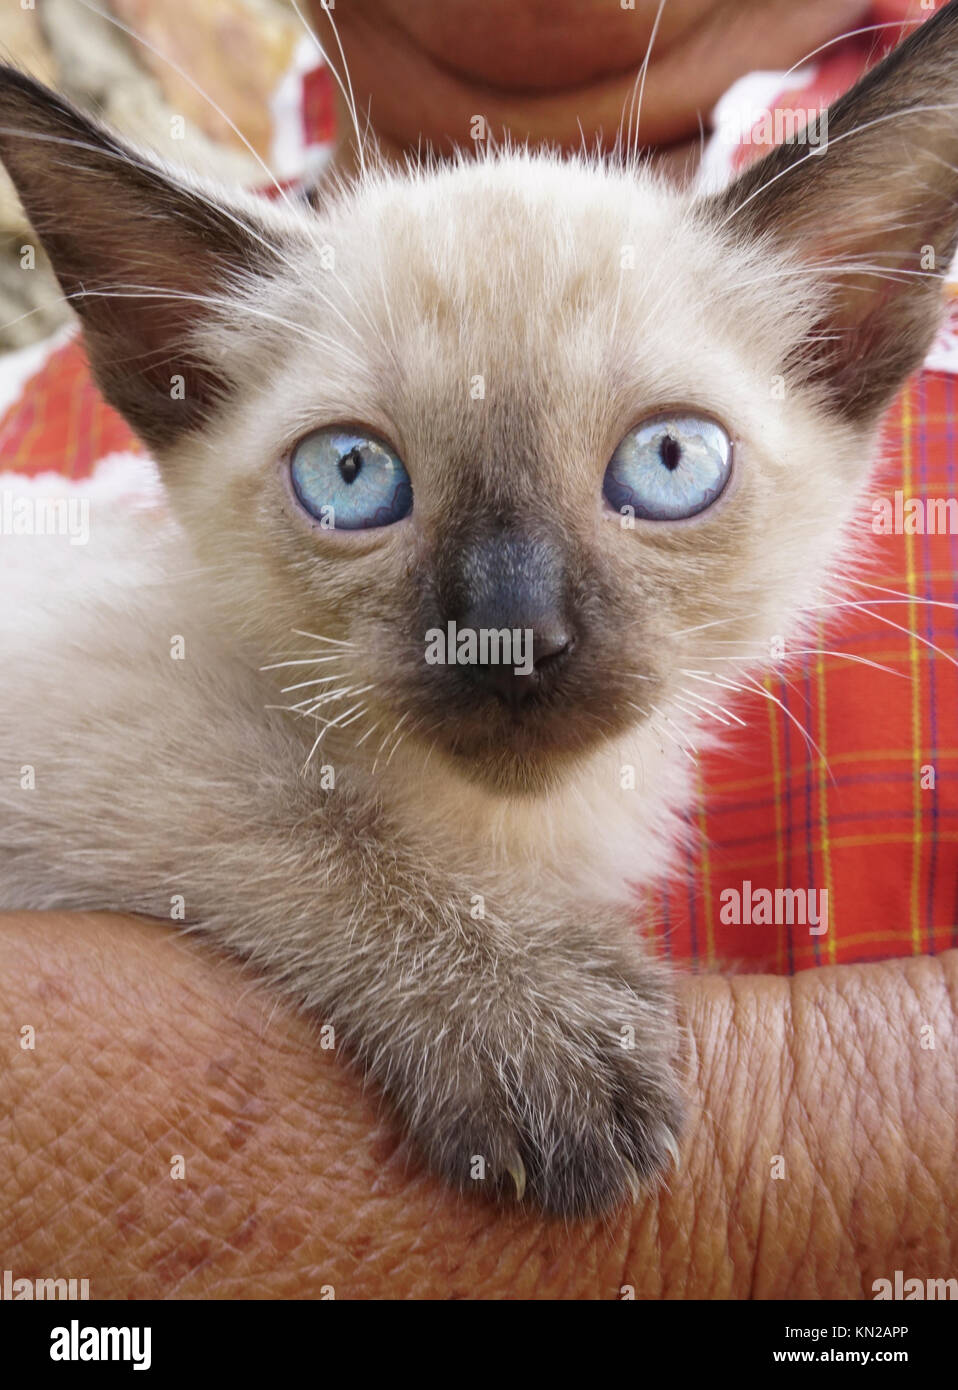 Siamese kitten, Acapulco, Mexico Stock Photo - Alamy